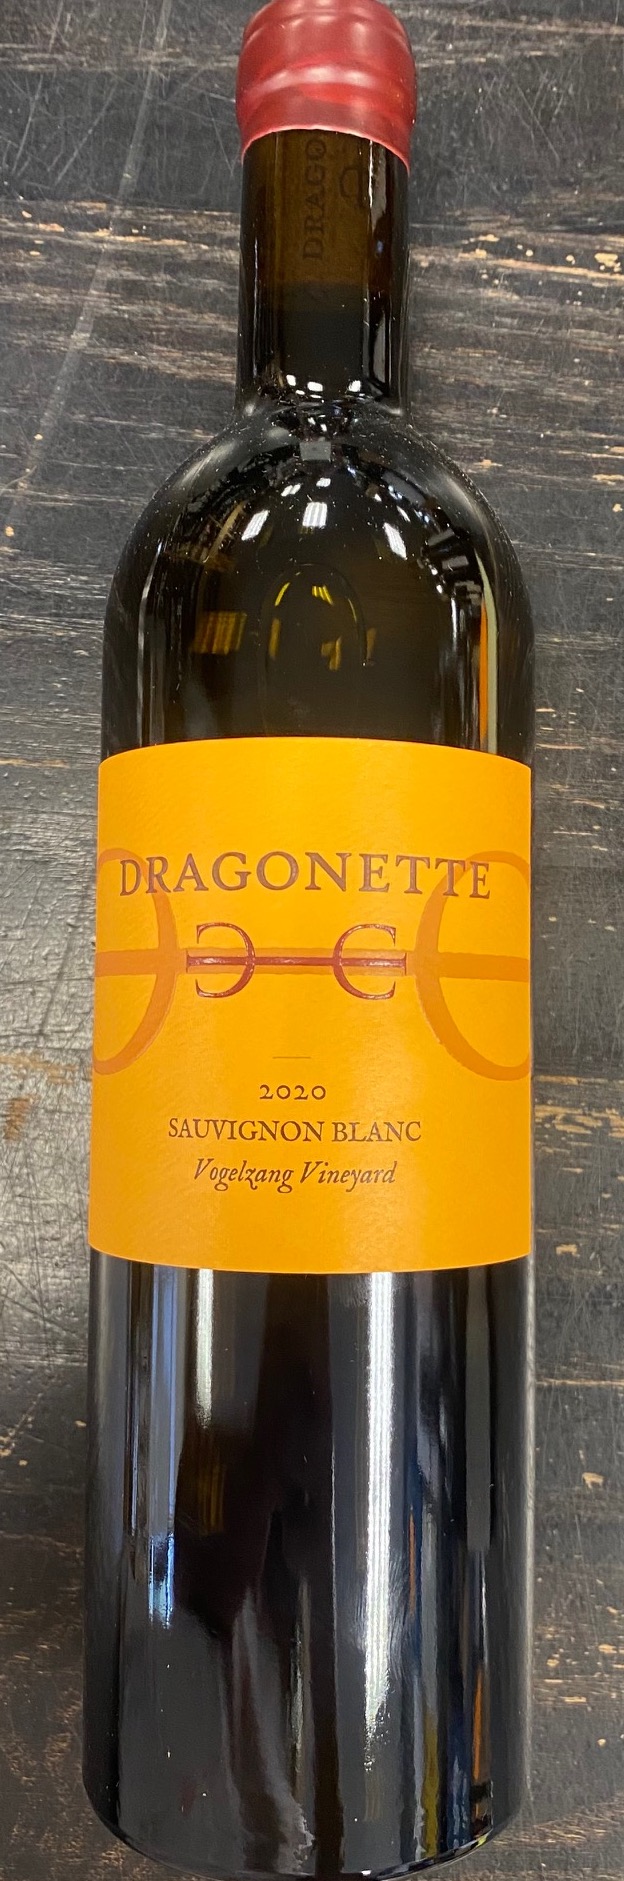 Dragonette - Sauvignon Blanc Vogelzang Vineyard 2020 (750ml) (750ml)